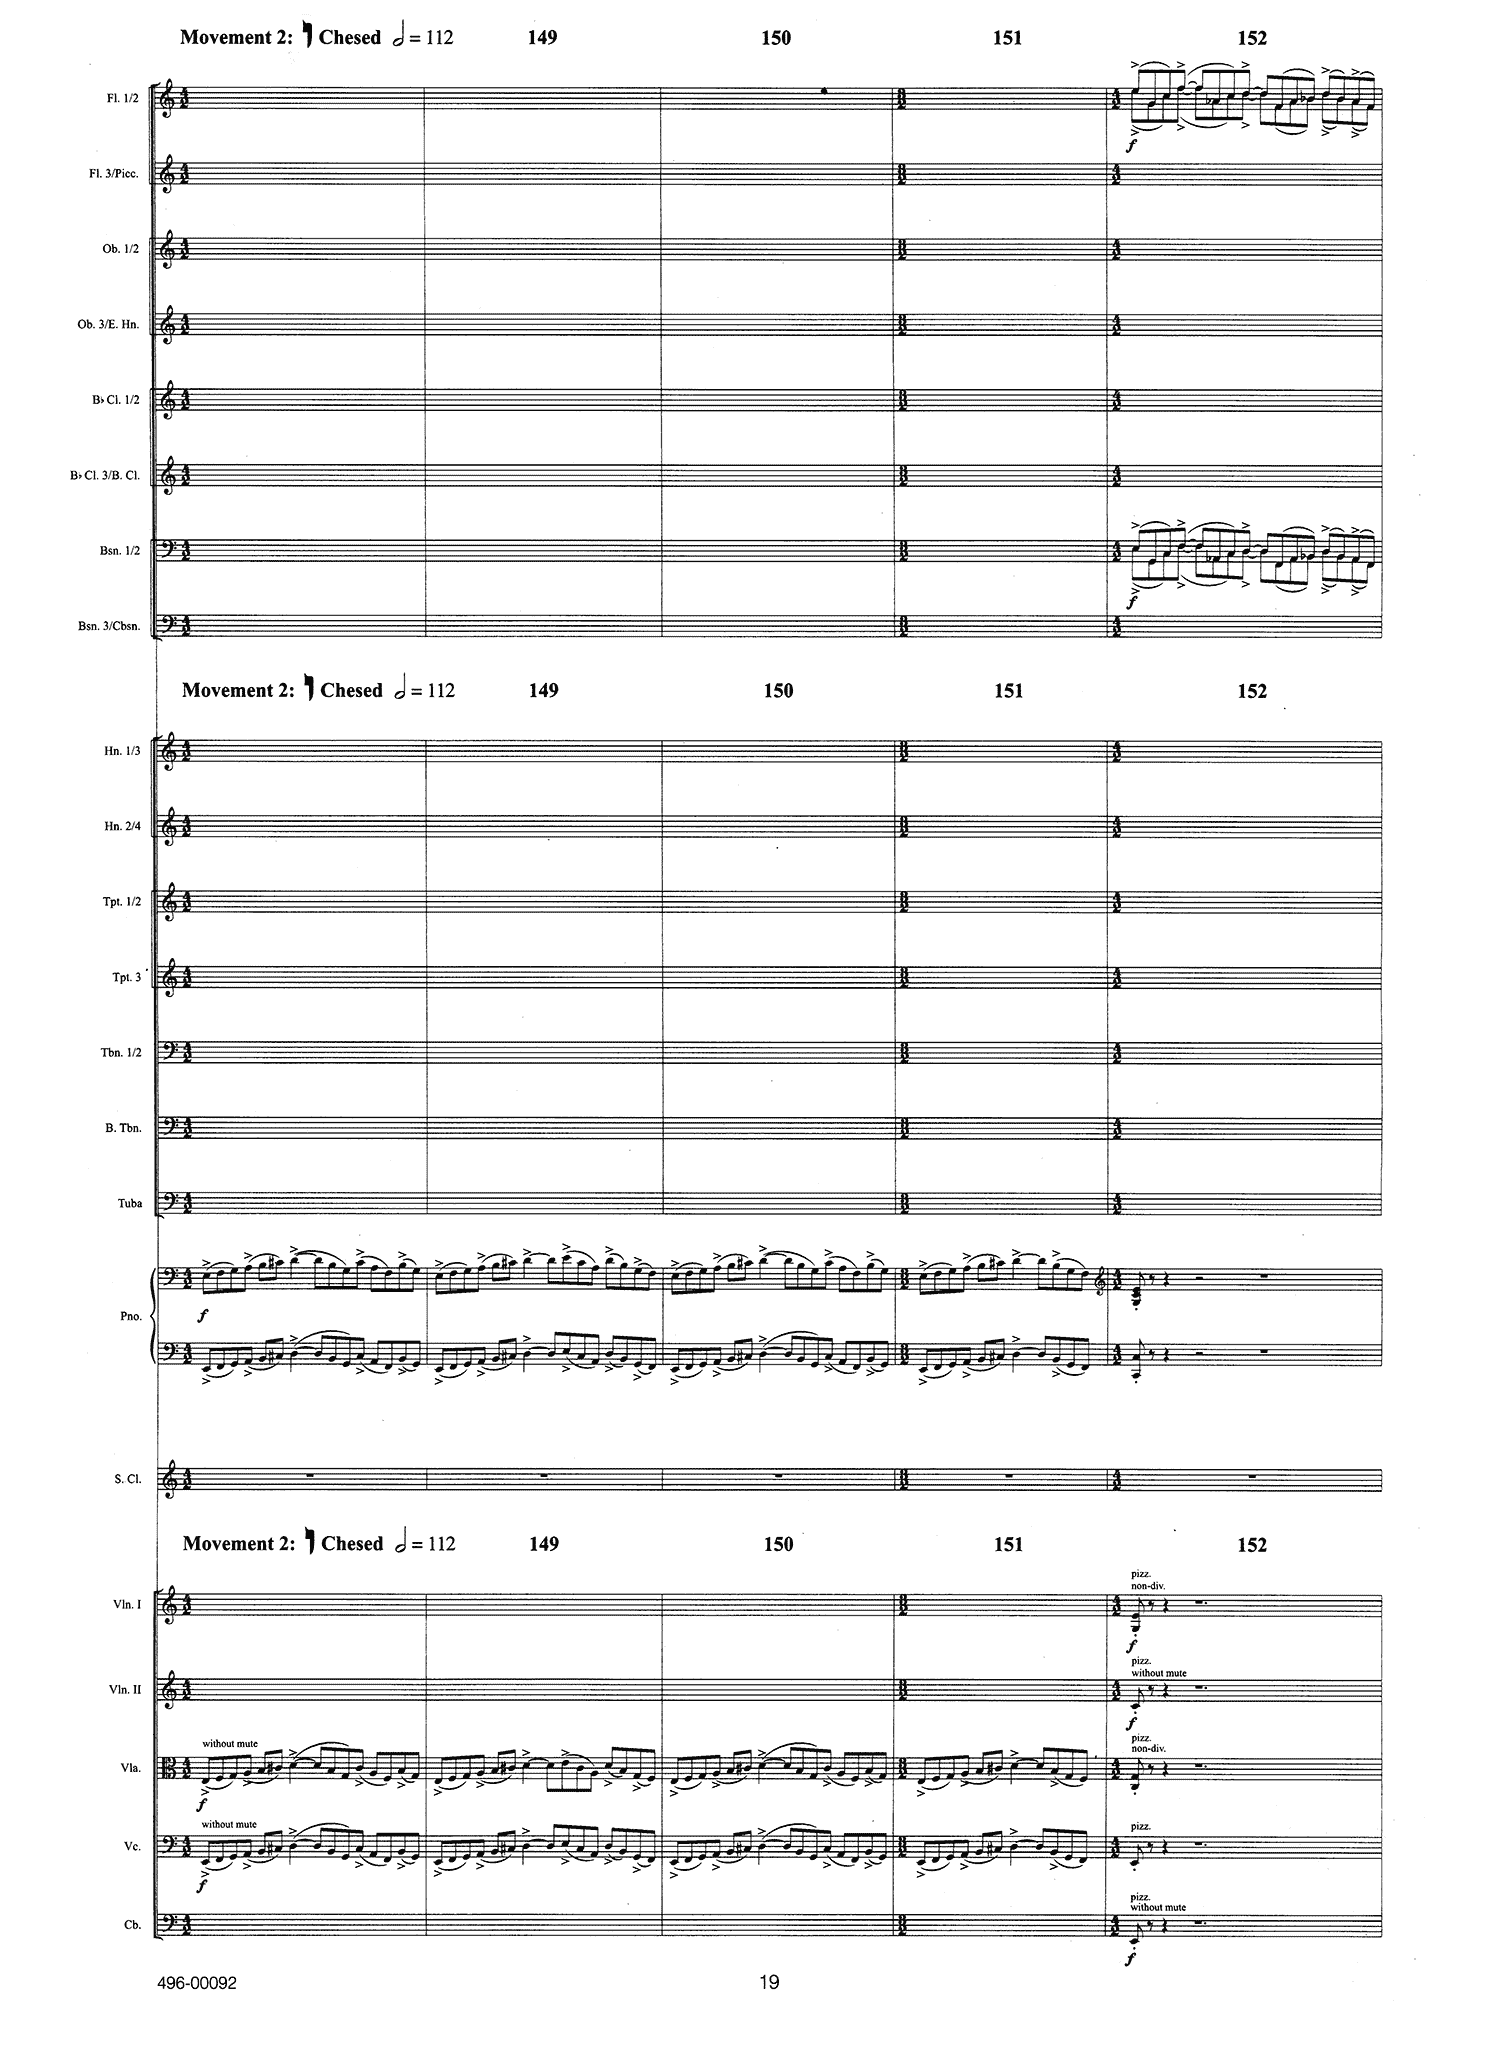 Leshnoff Clarinet Concerto ‘Nekudim’ full score - Movement 2